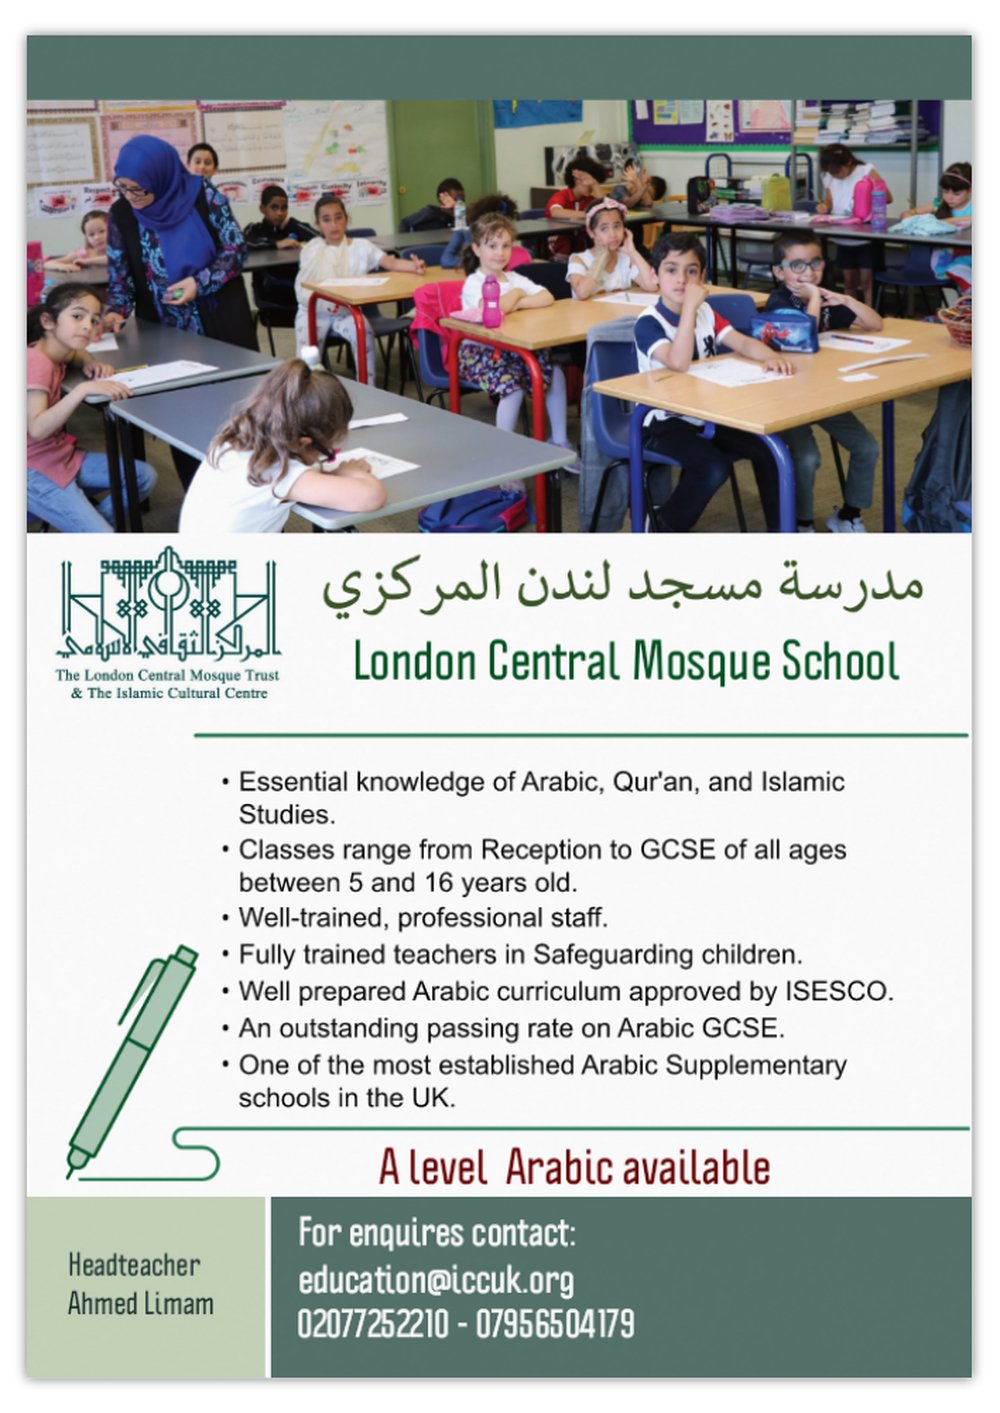 london central mosque school visit